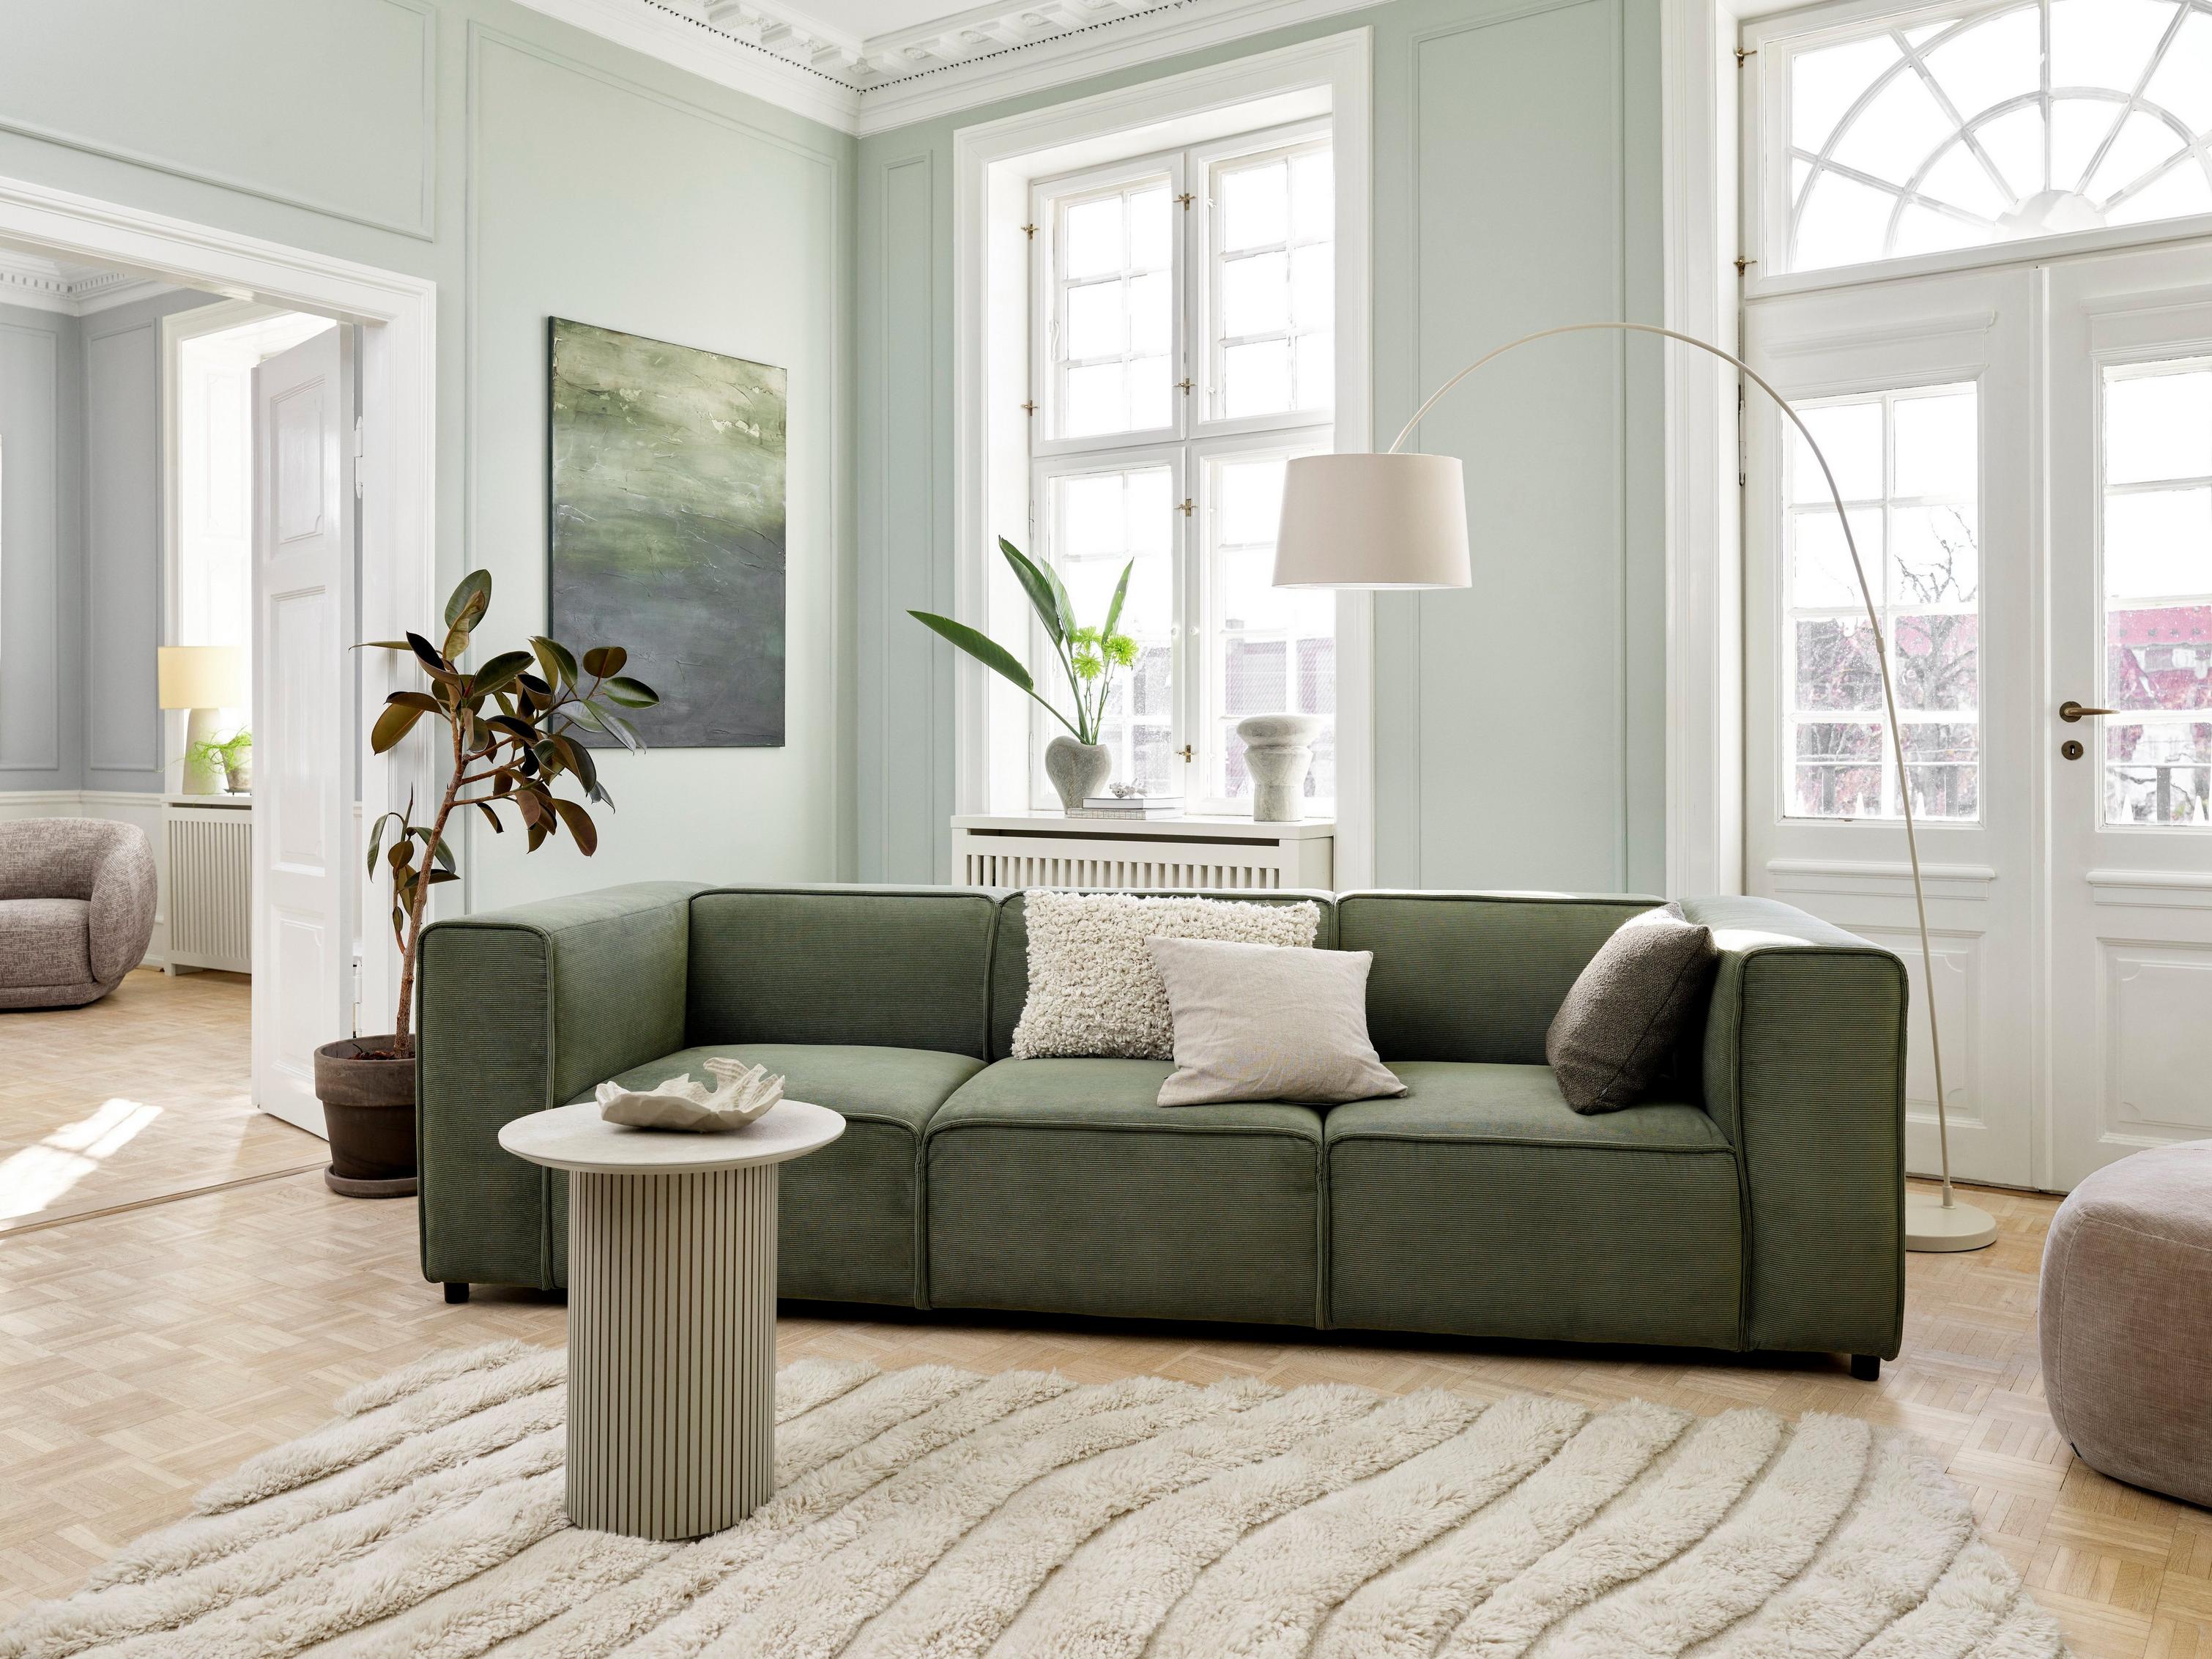 Obývací pokoj ve stylu Japandi s pohovkou Carmo z látky Skagen v zelené barvě.